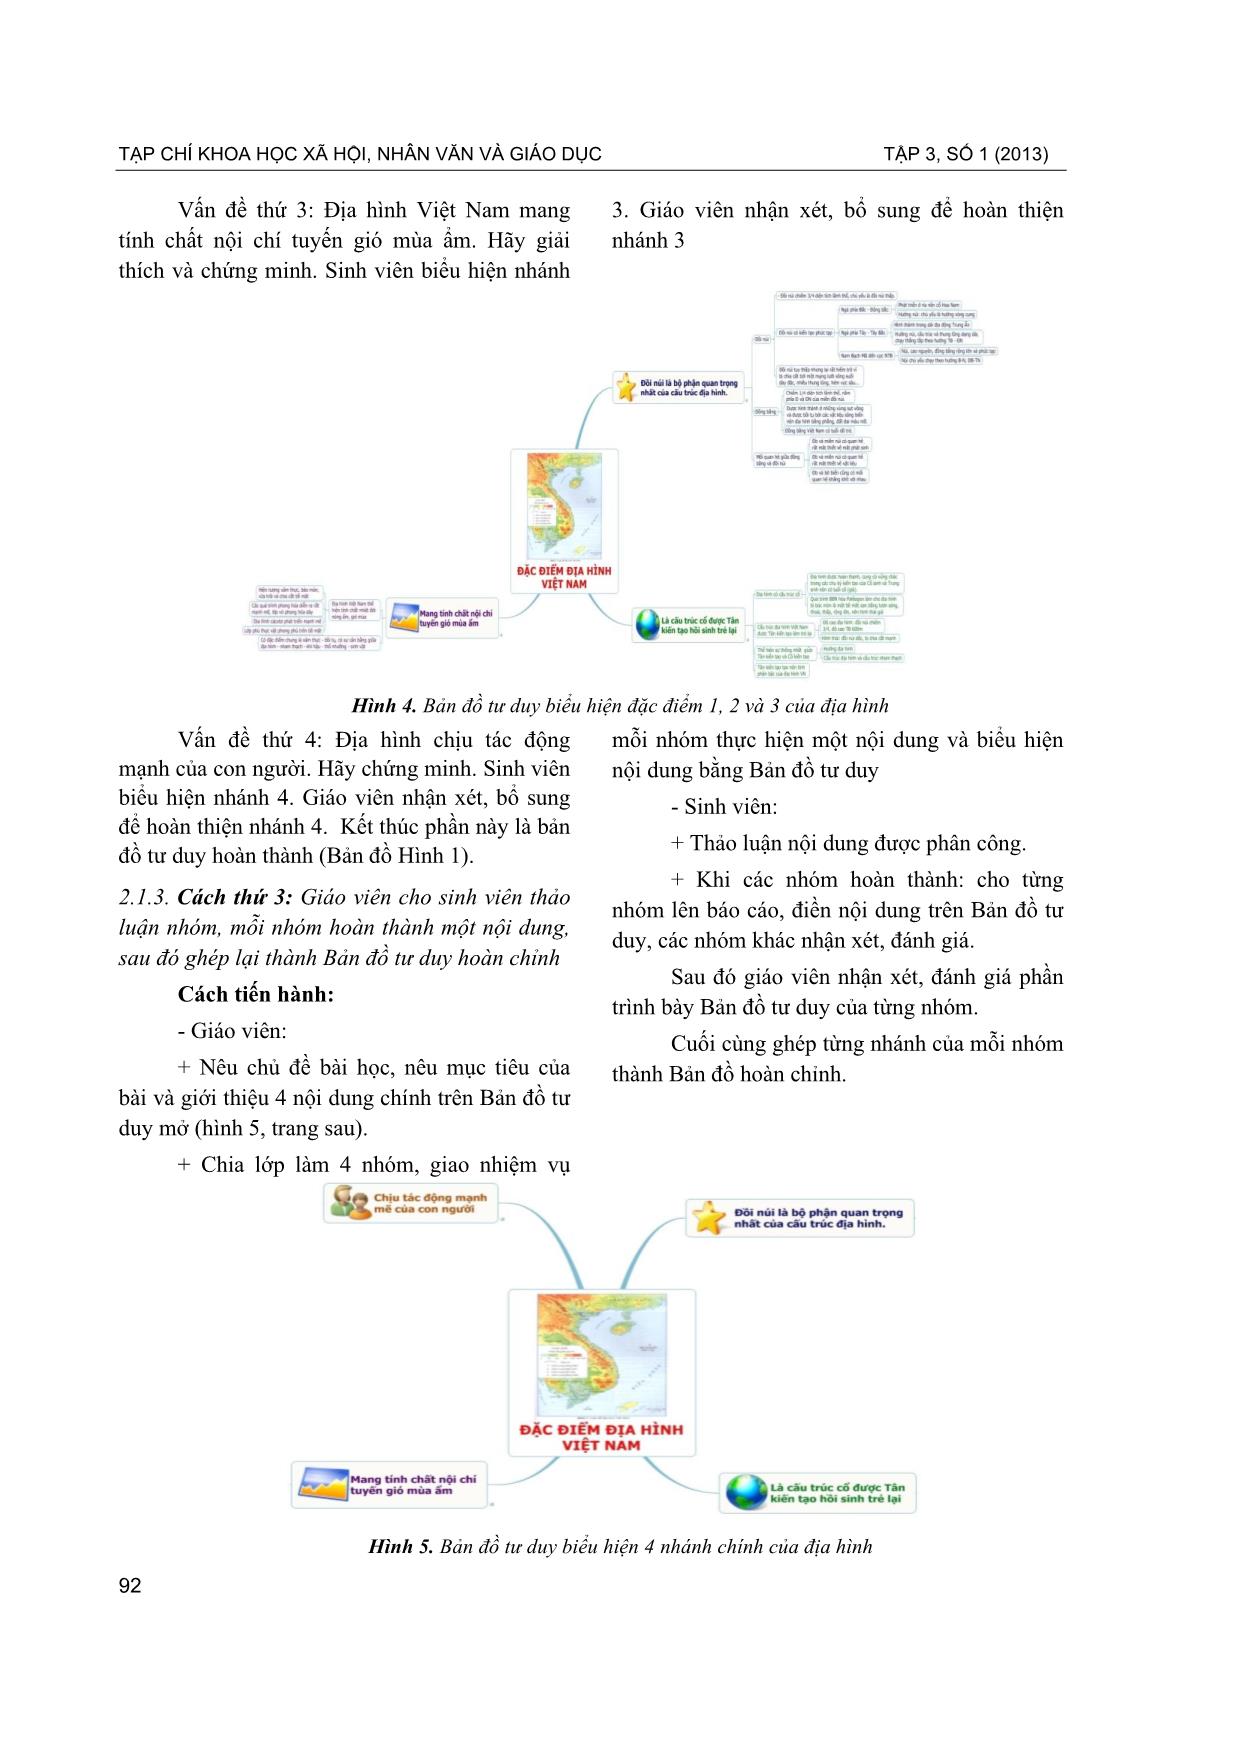 Phương pháp sử dụng bản đồ tư duy trong dạy học các học phần địa lí tự nhiên Việt Nam ở khoa Địa lí, trường đại học sư phạm - ĐHĐN trang 4